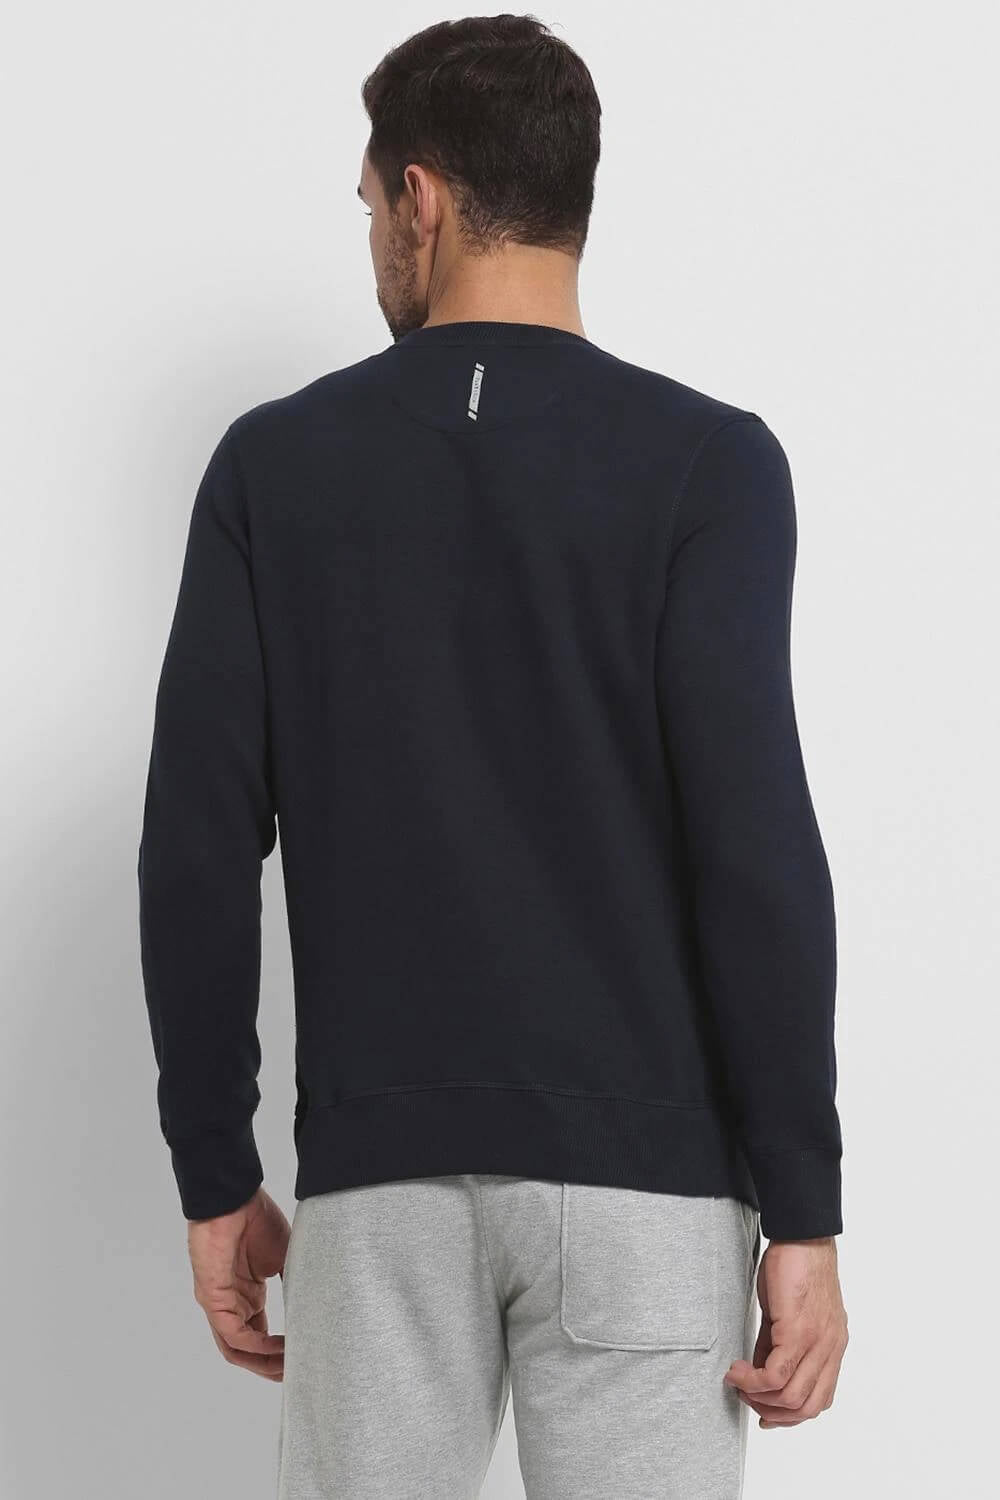 Van Heusen Navy Sweatshirt for Men #60076